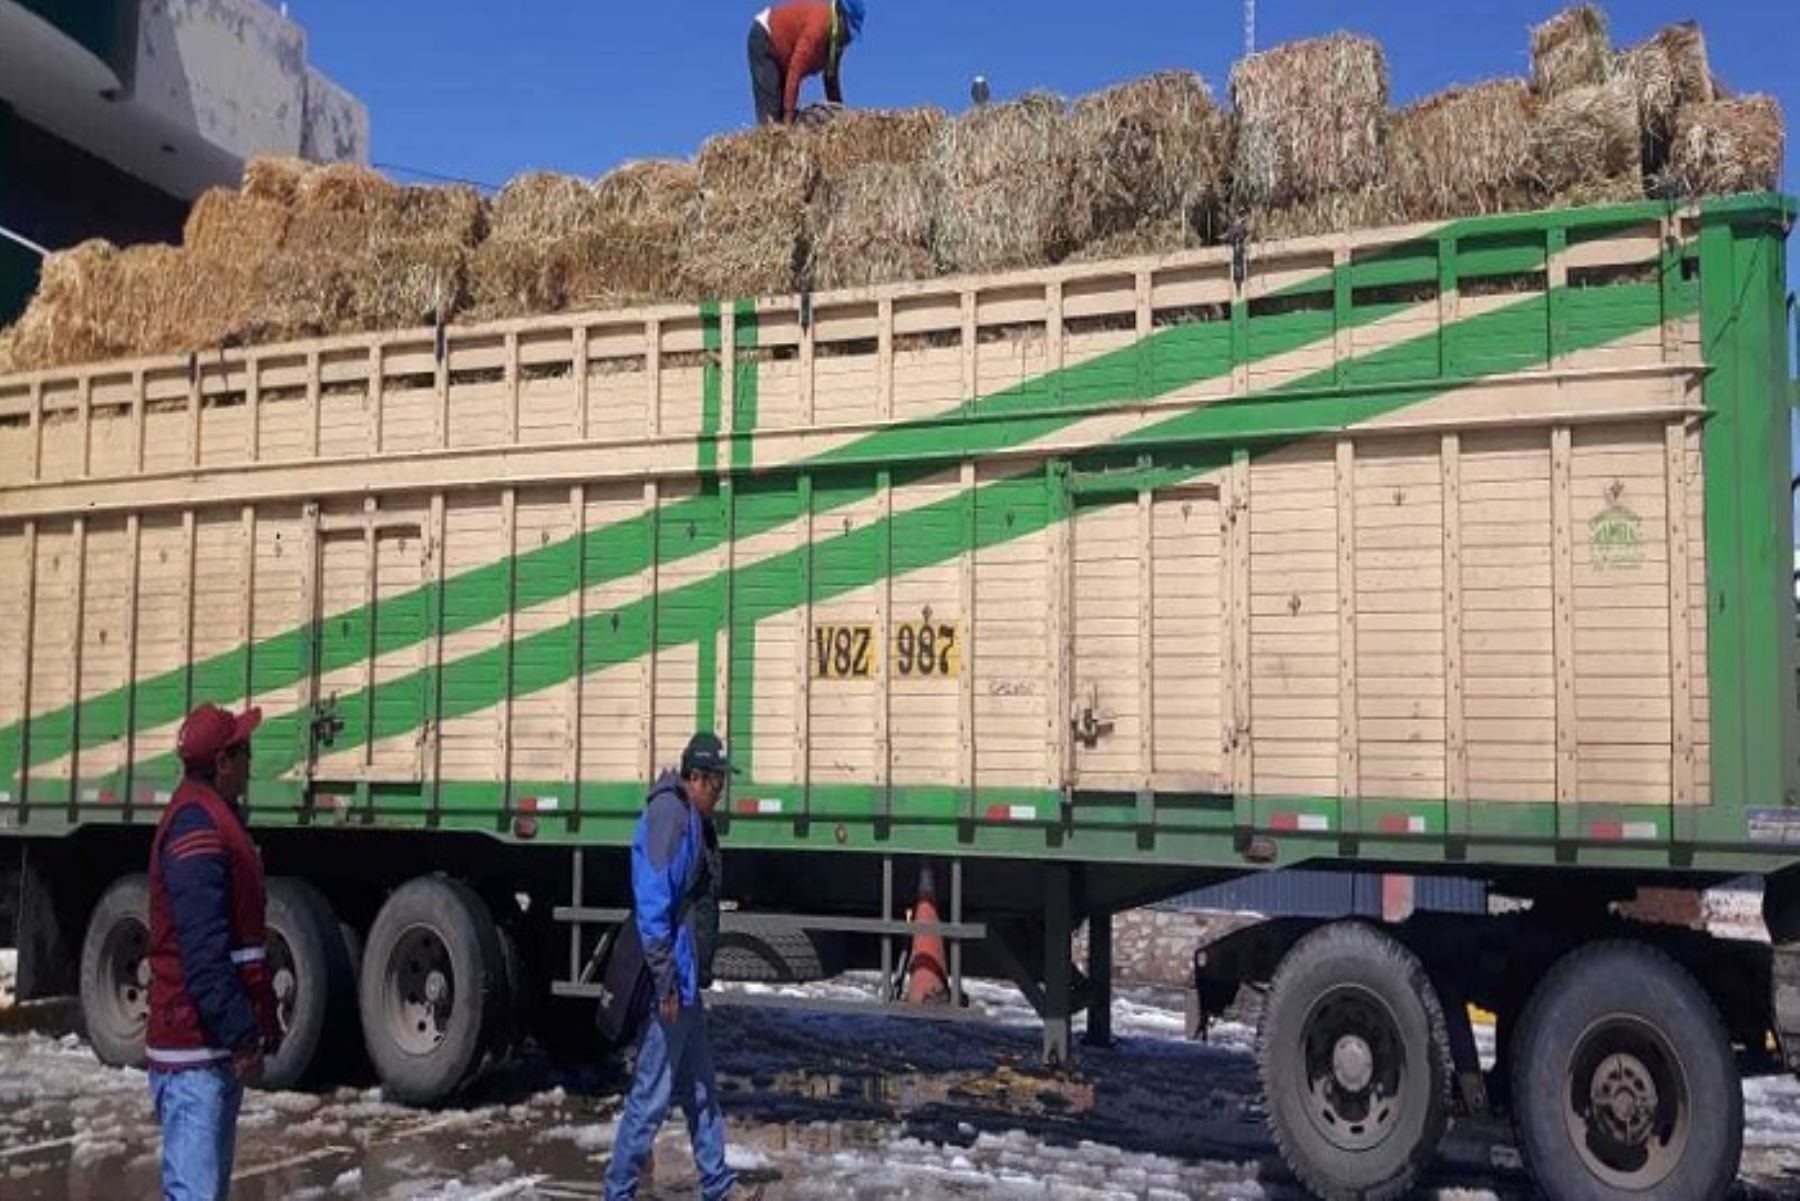 El Ministerio de Agricultura y Riego (Minagri), a través de Agro Rural, inició la distribución de pacas heno en los distritos afectados por la erupción del volcán Ubicas en los departamentos de Moquegua, Arequipa, Puno y Tacna; a fin de garantizar la alimentación del ganado.